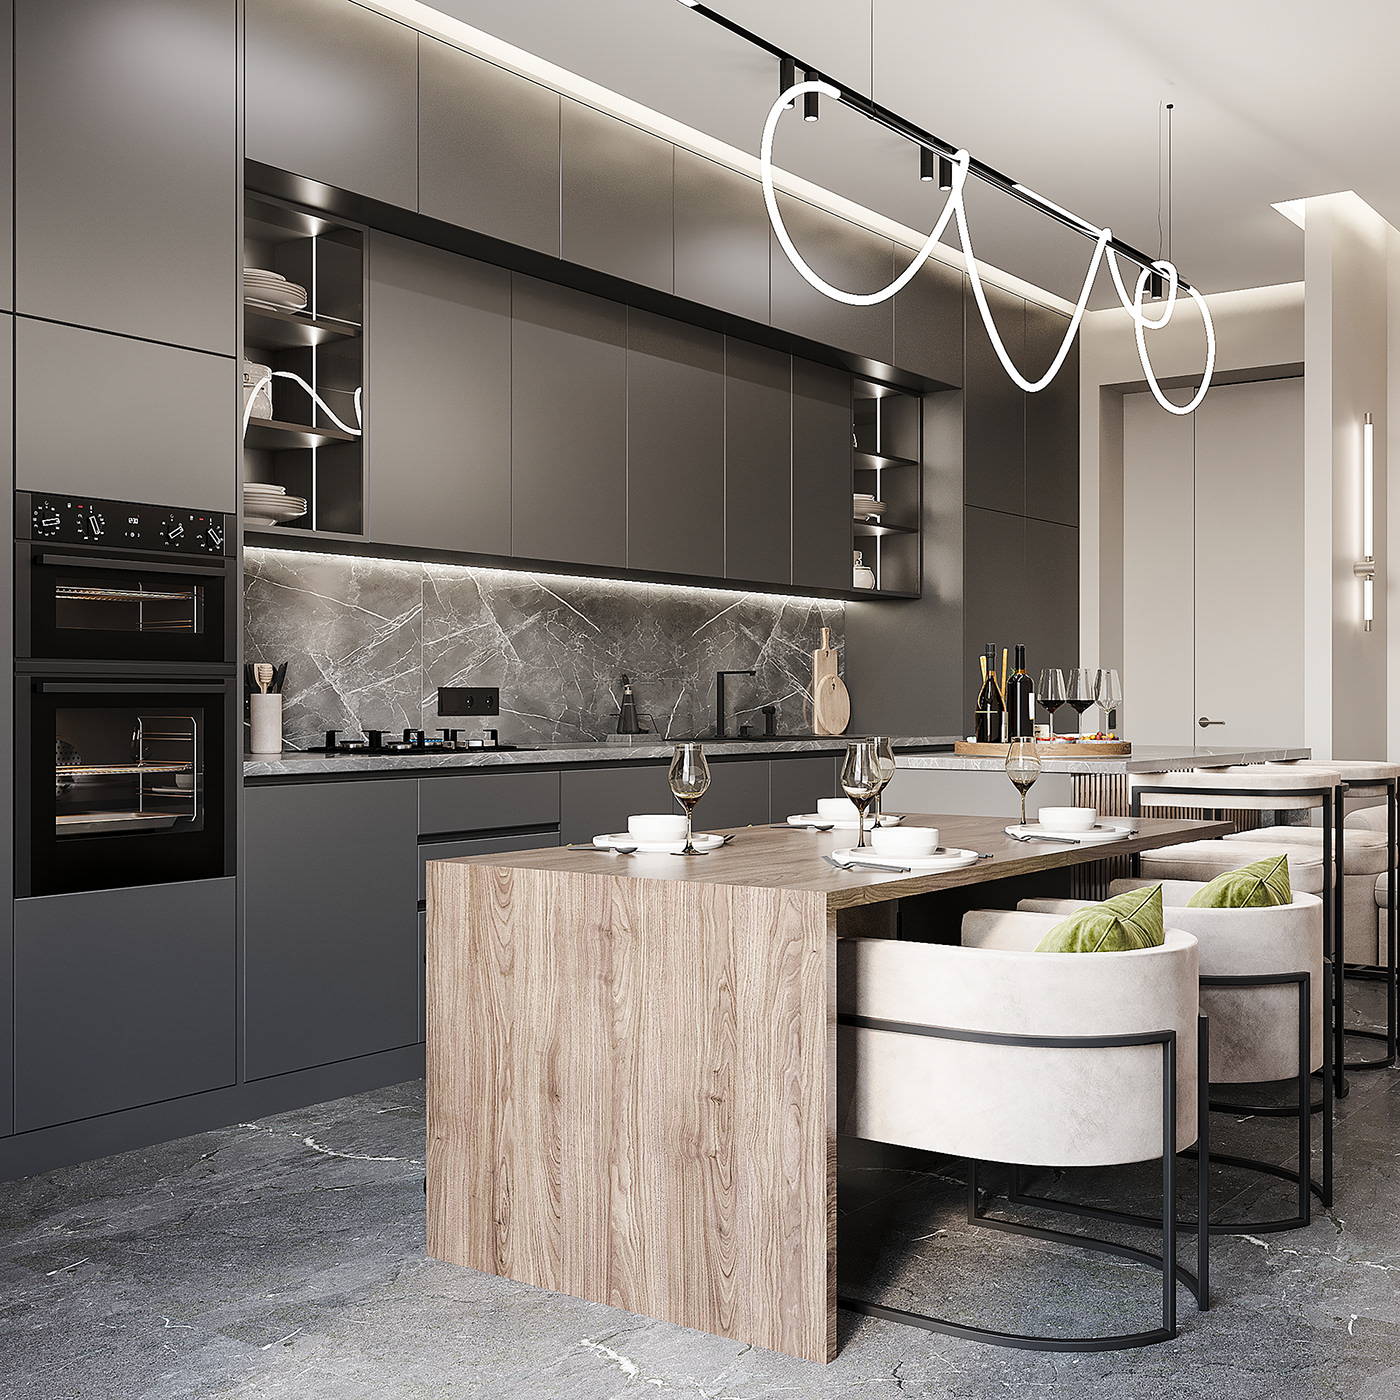 kitchen modern Interior grey Vizualization 3ds max corona Render modernkitchen